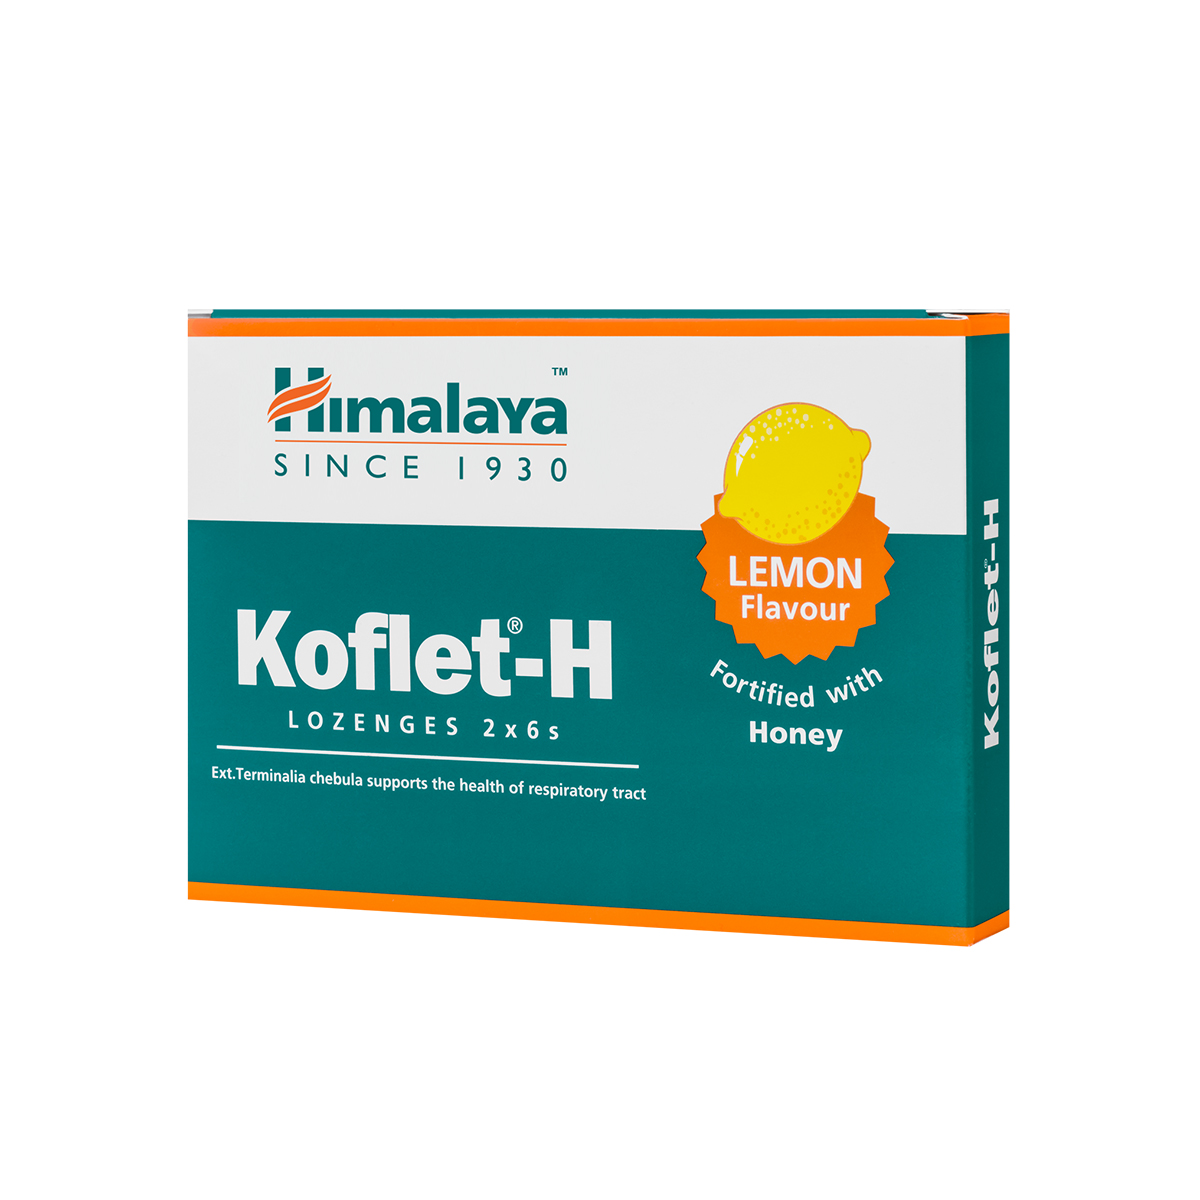 Dureri de gat - Koflet-H cu aromă de lămâie, 12 pastile, Himalaya, sinapis.ro